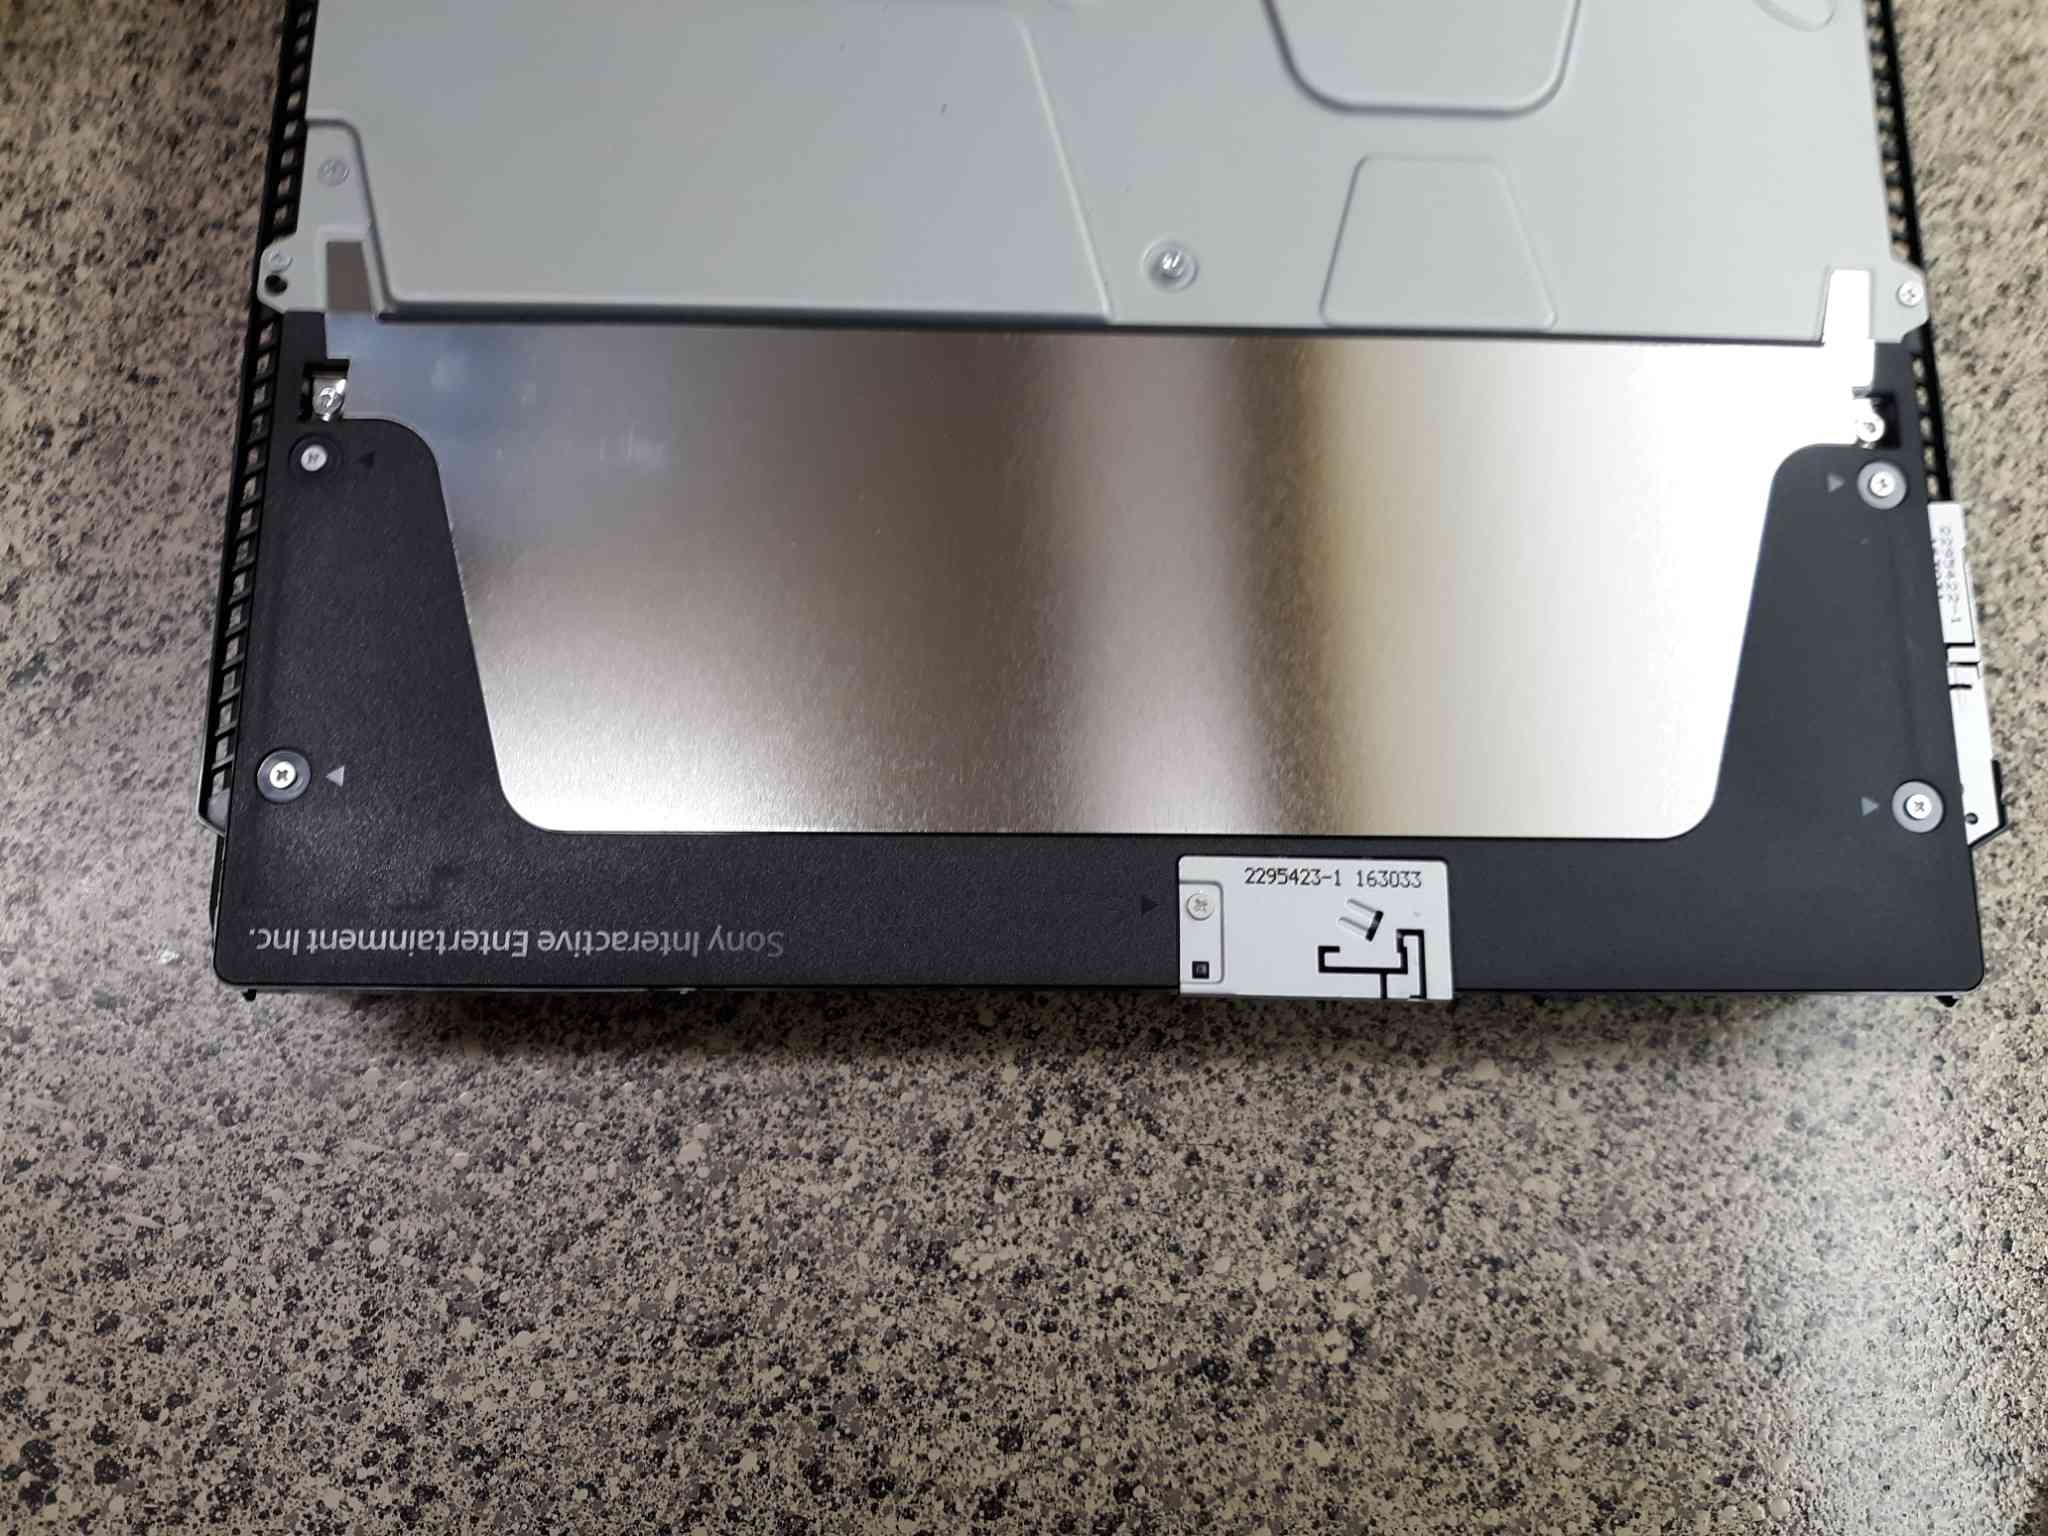 Använd en Phillips -skruvmejsel för att ta bort det svarta plastskyddet nära PS4 -konsolens bakre ände.